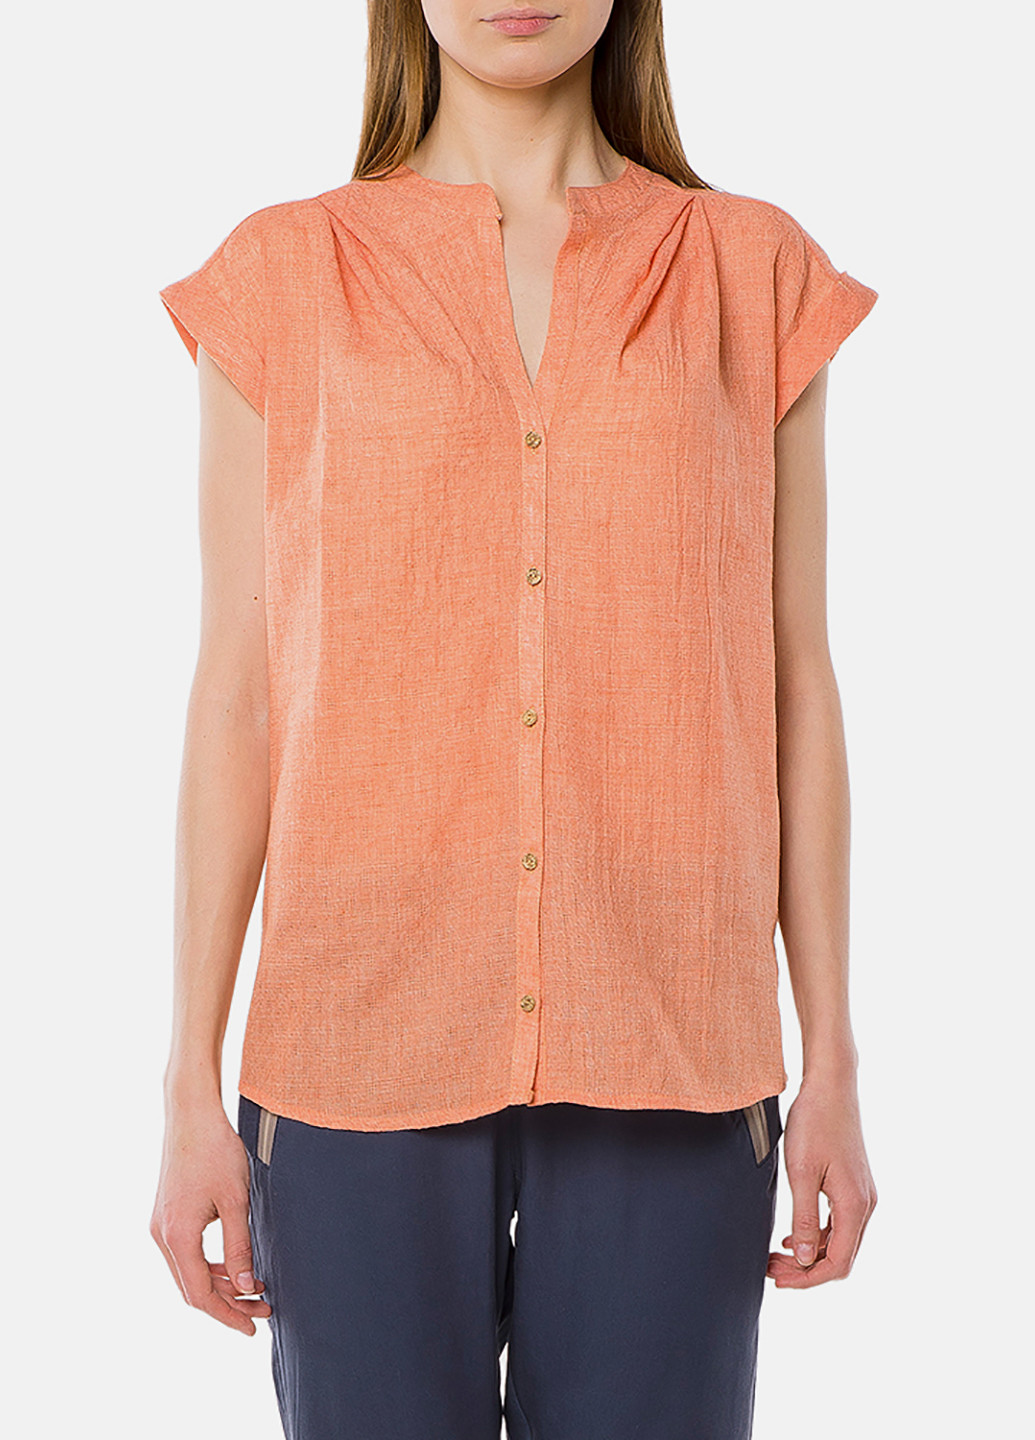 Оранжевая летняя блуза MR 520